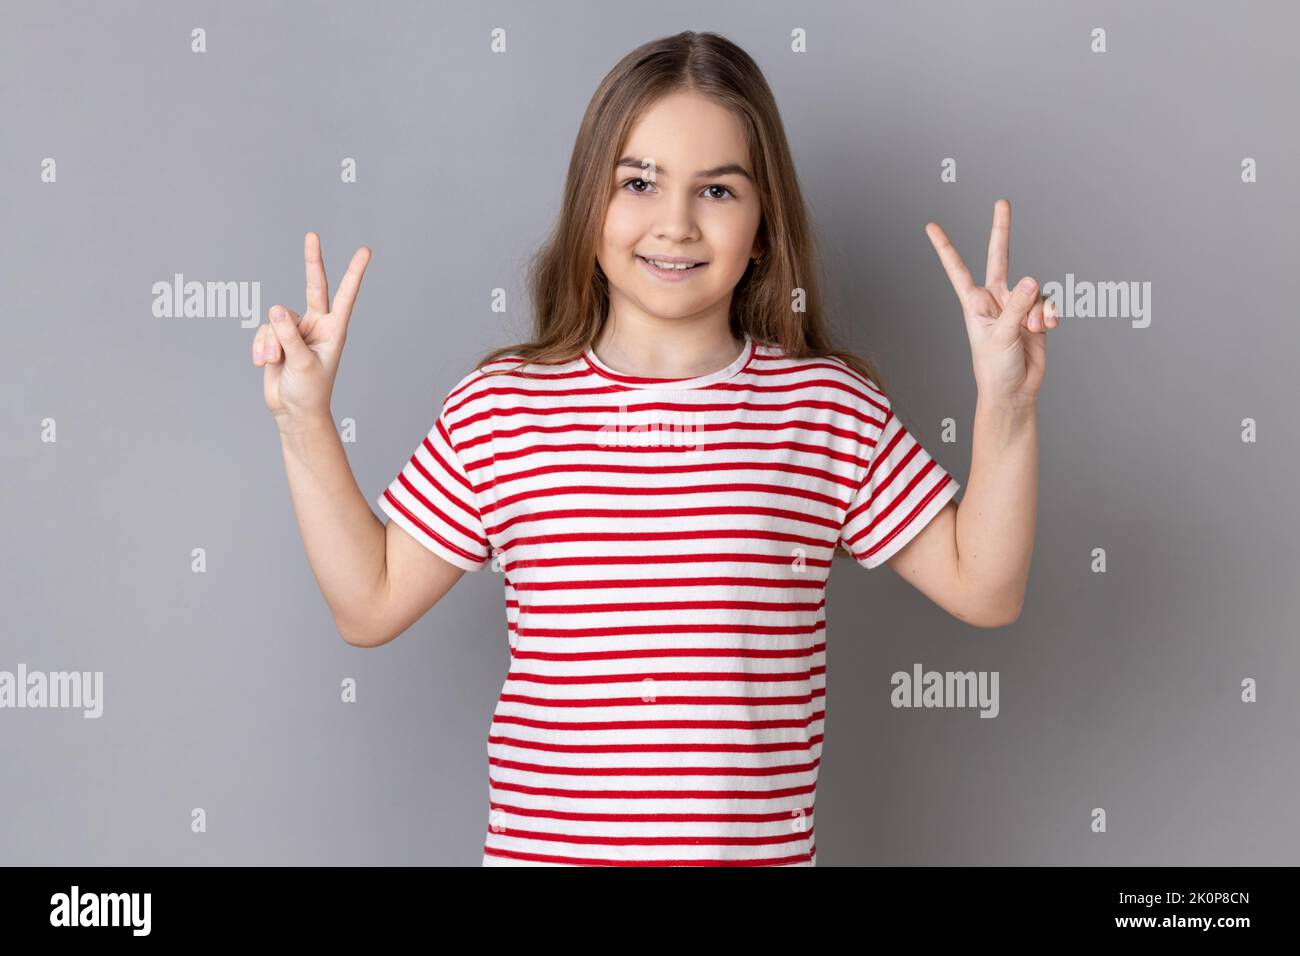 Portrait de positive optimiste adorable petite fille portant un T-shirt rayé gestante signe de victoire à la caméra, le succès ou la réalisation. Prise de vue en studio isolée sur fond gris. Banque D'Images